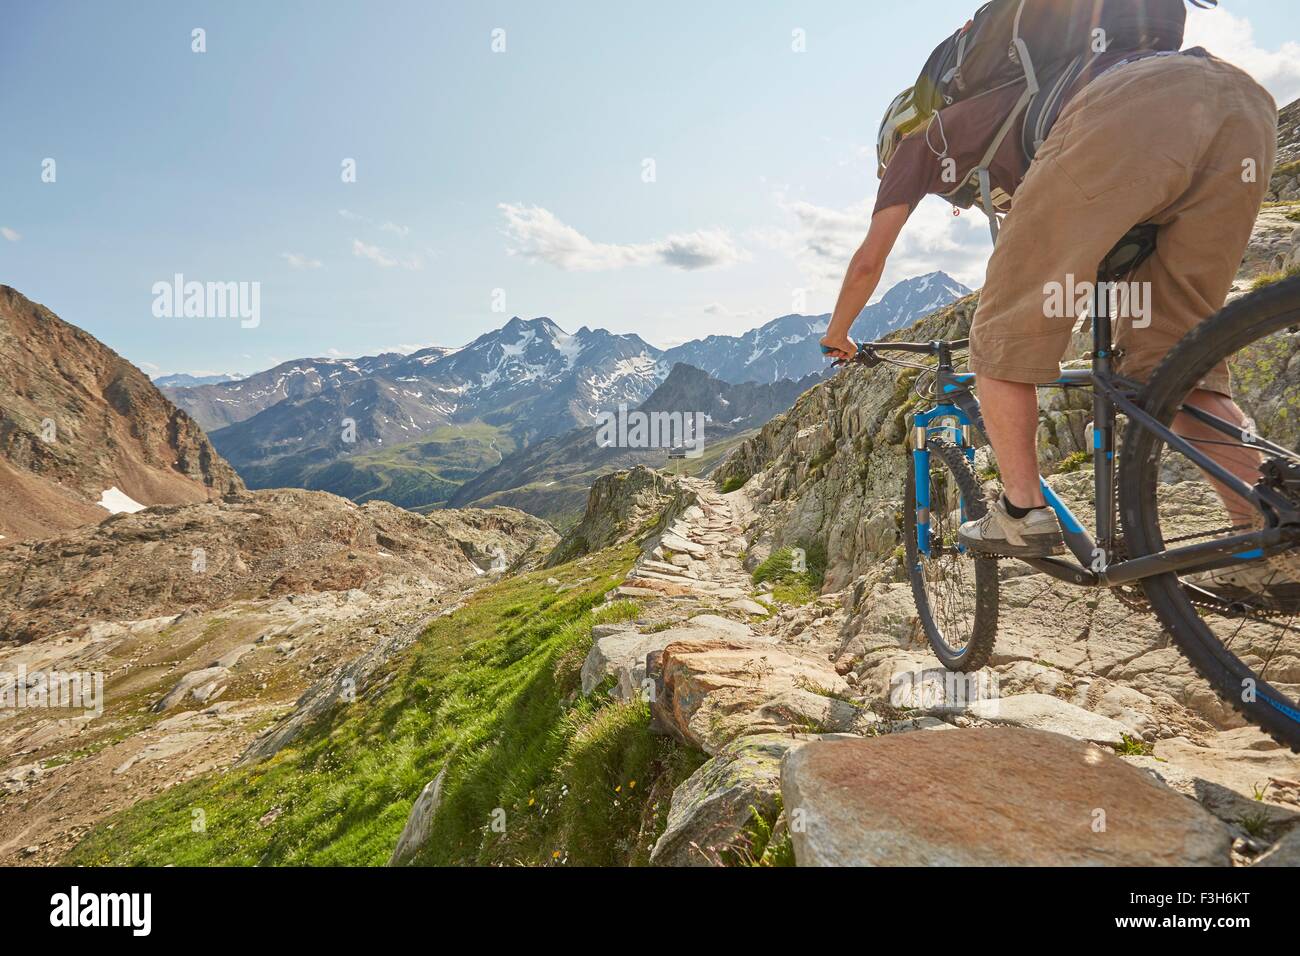 Young man mountain biking at Val Senales Glacier, Val Senales, South Tyrol, Italy Stock Photo